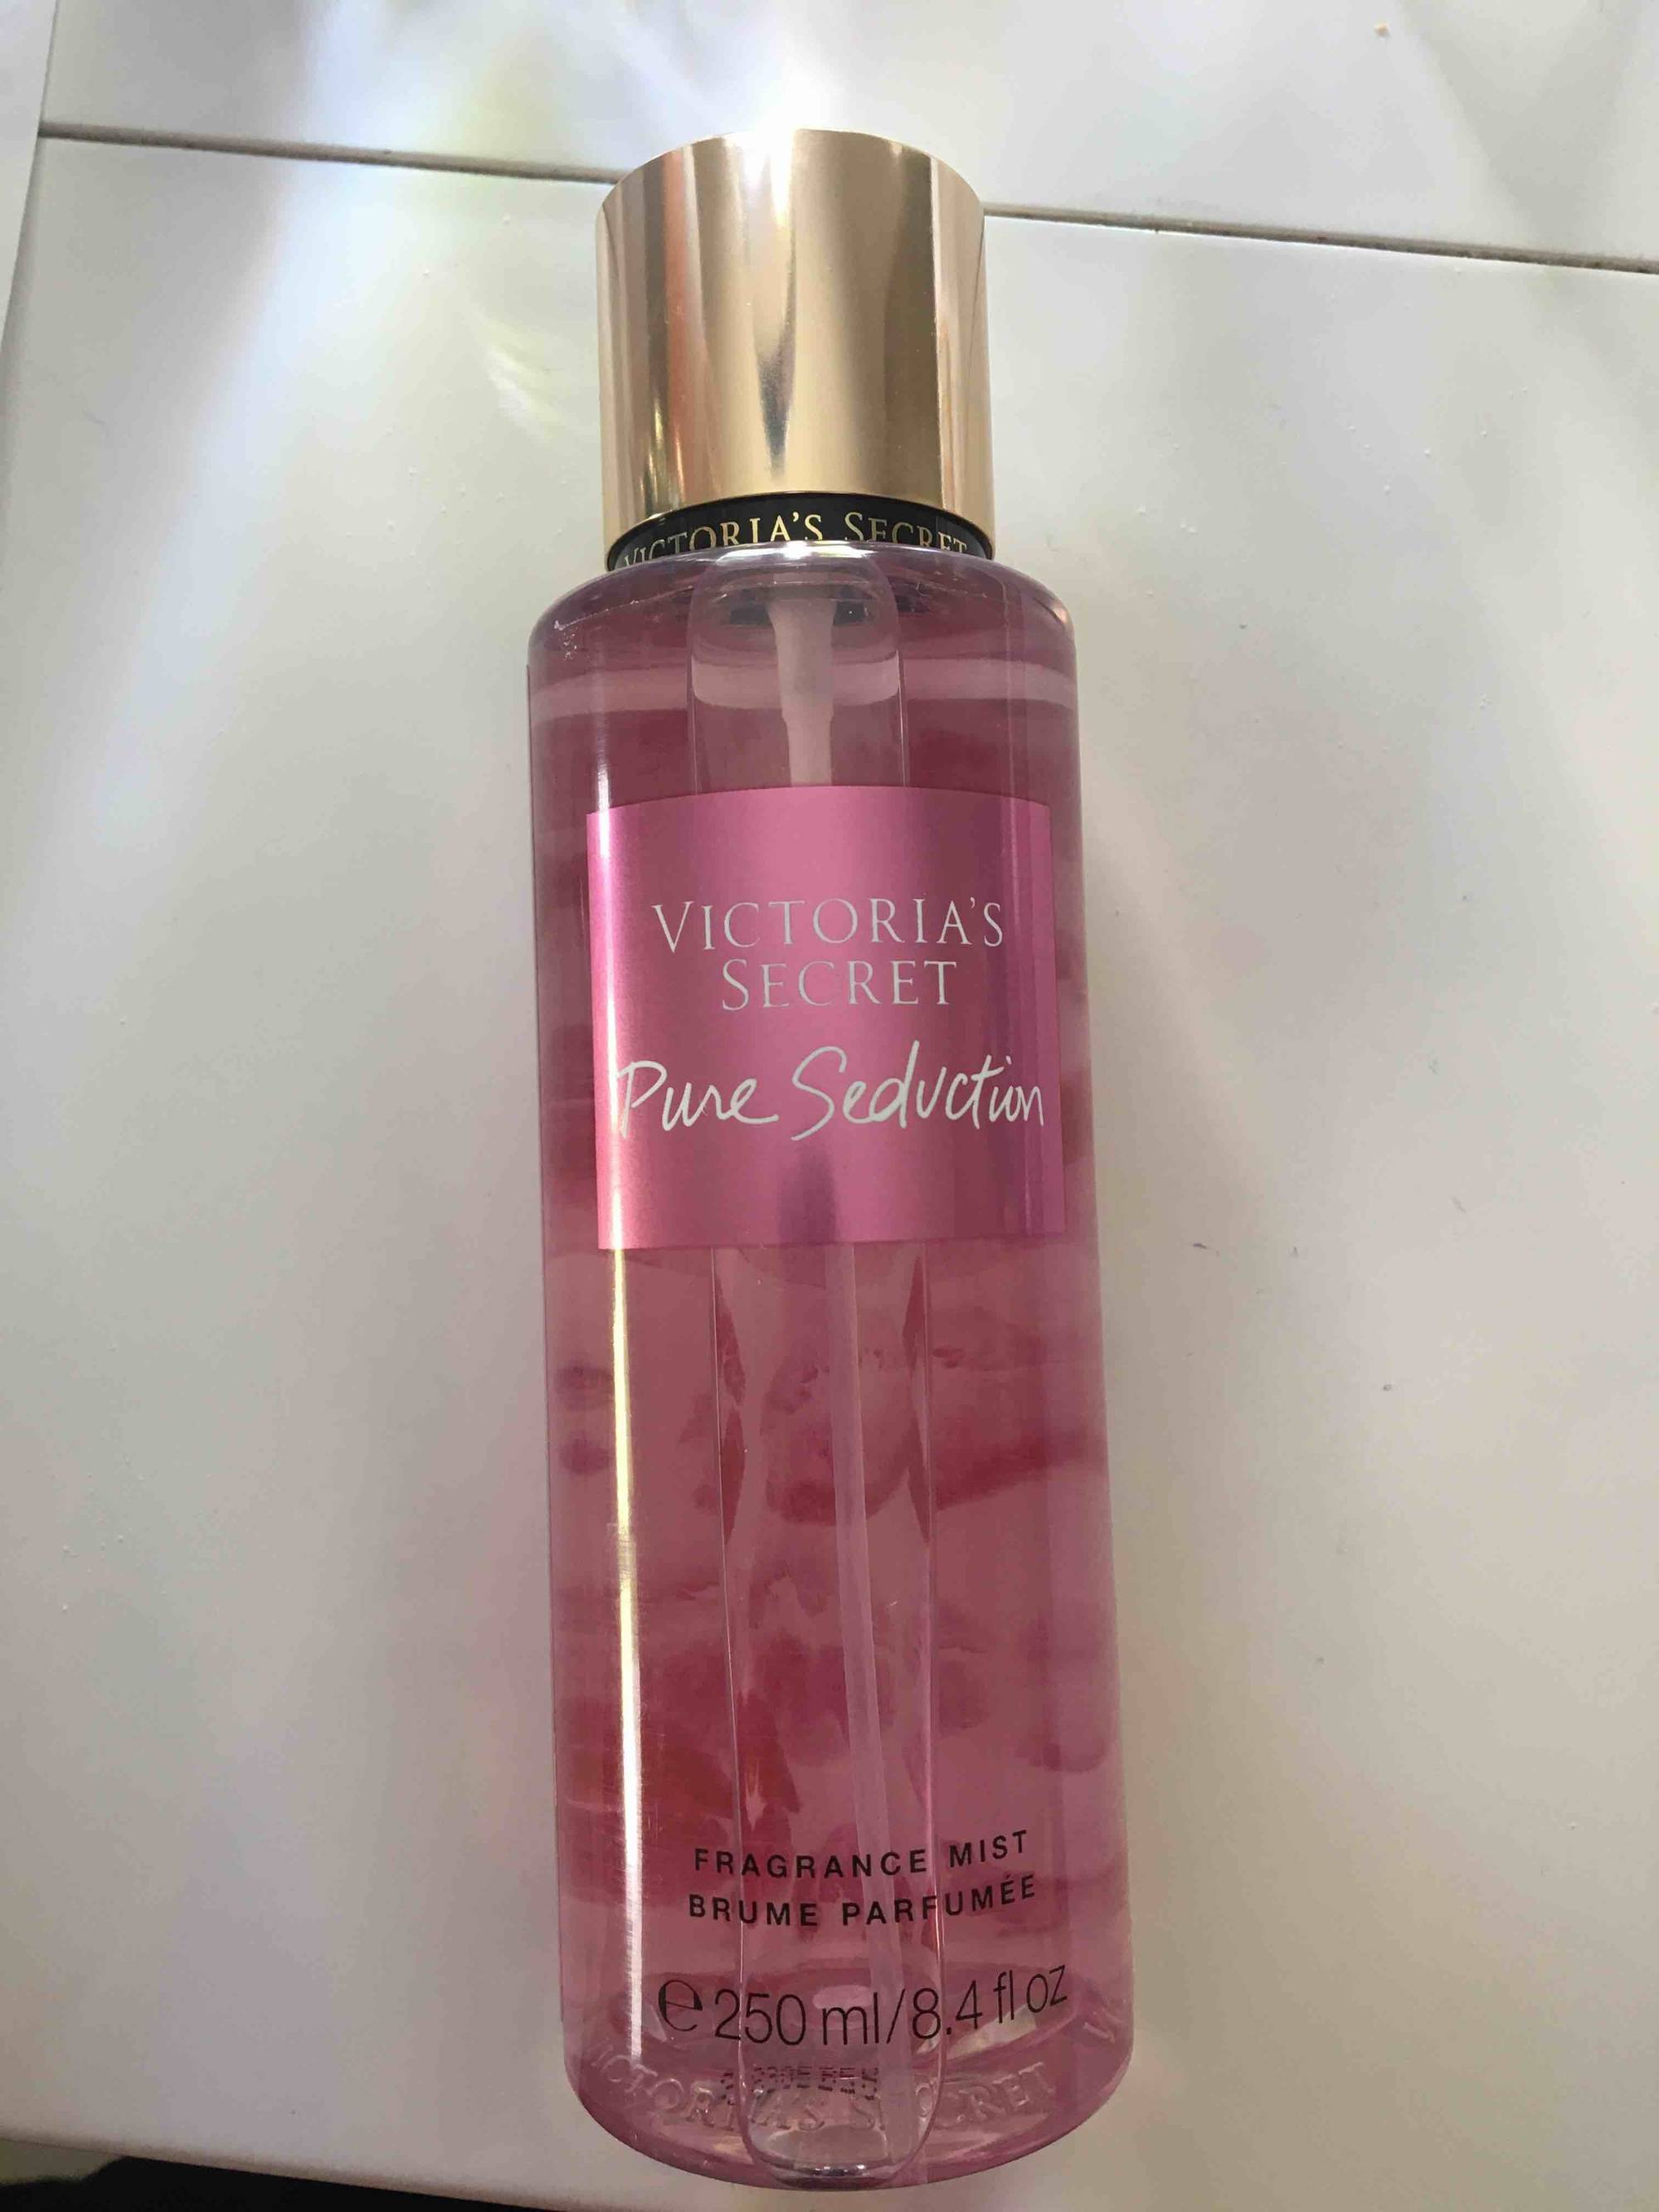 VICTORIA'S SECRET - Pure seduction - Brume parfumée